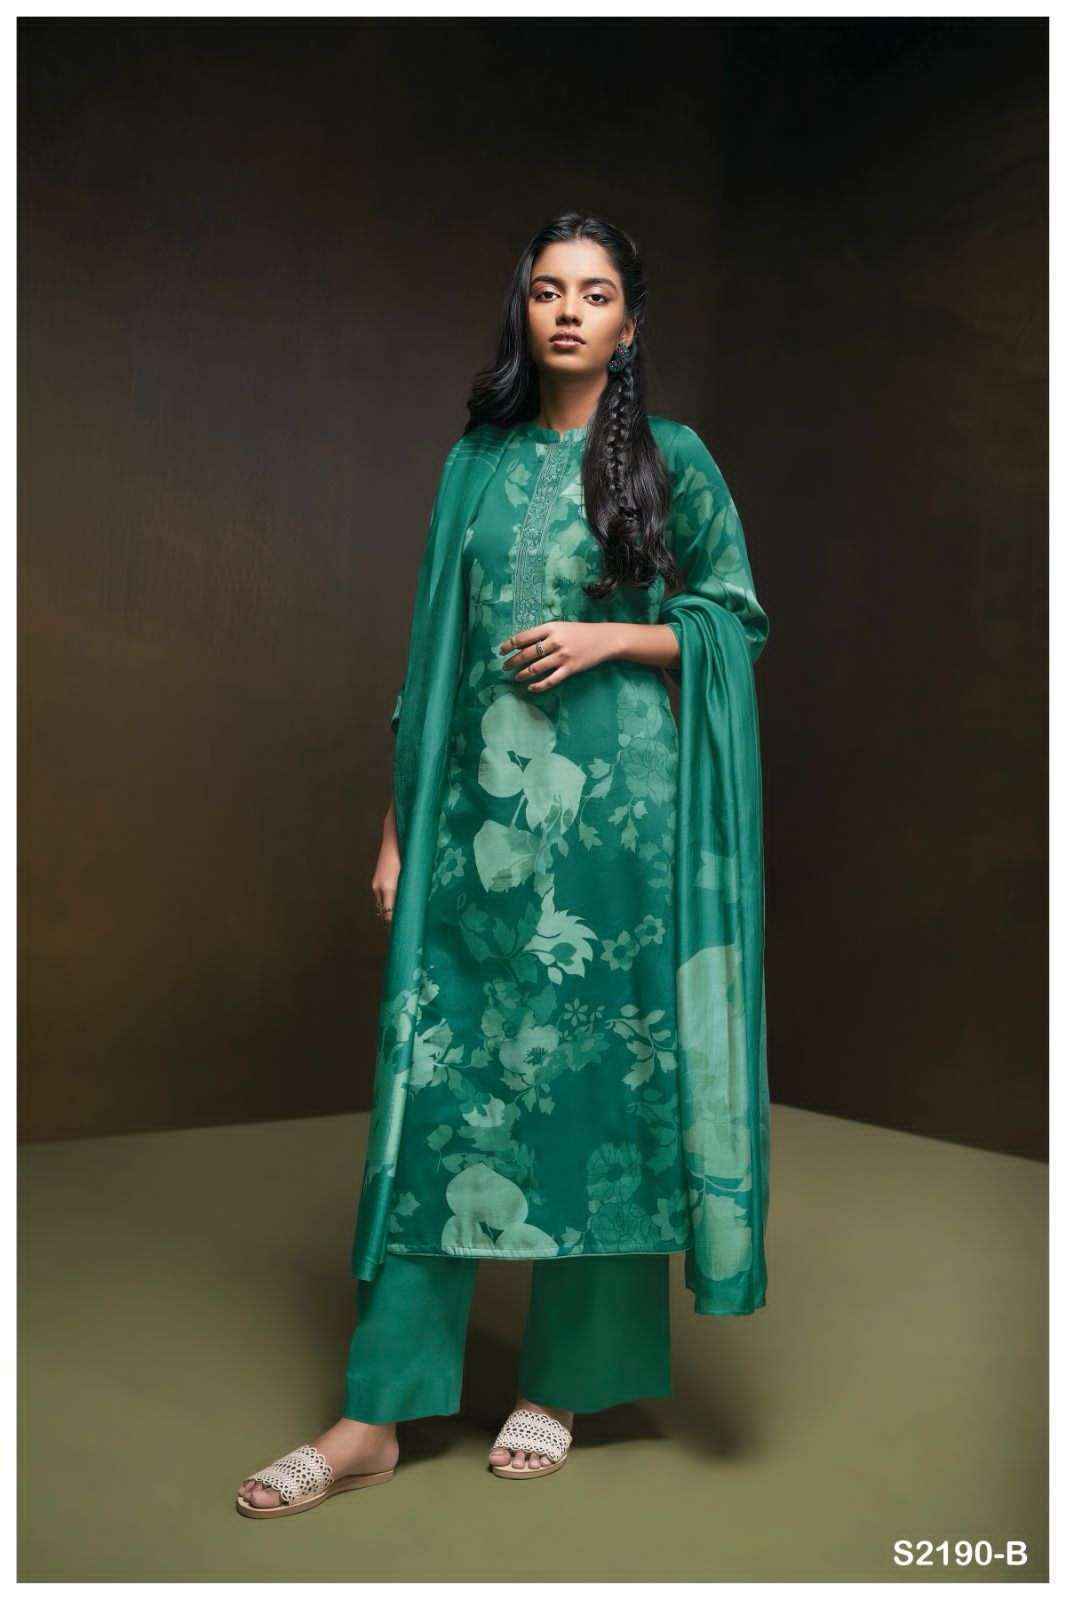 Ganga Finn 2190 Cotton Dress Material 4 pcs Catalogue